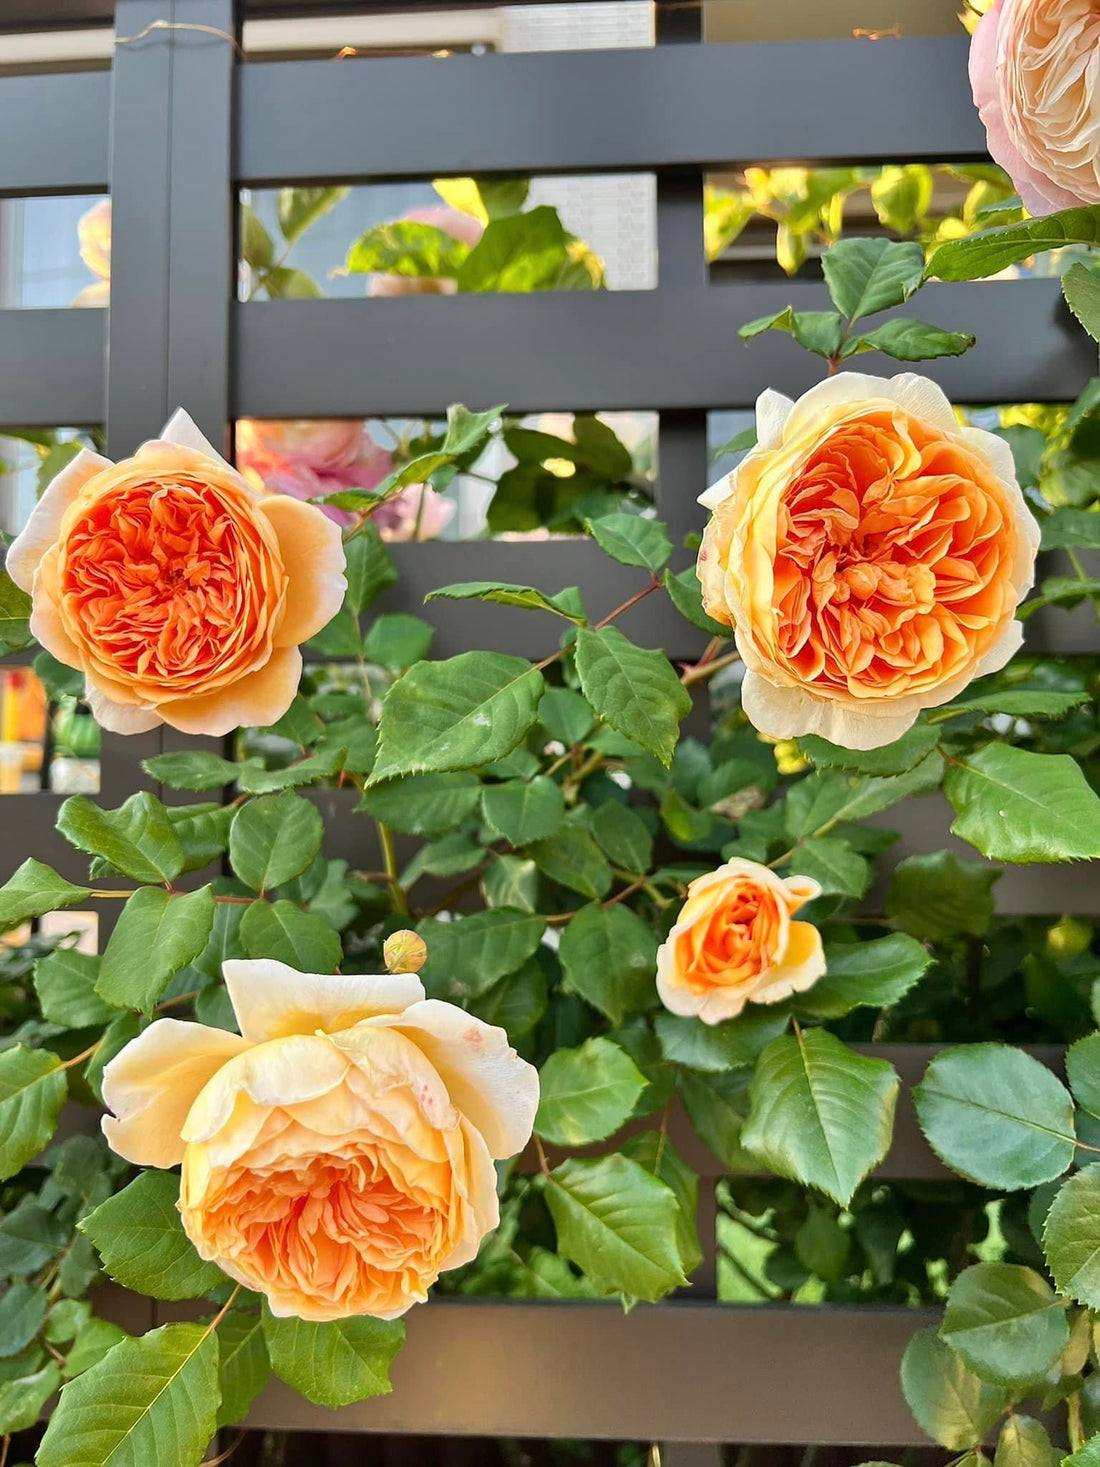 Regal Beauty: Crown Princess Margareta - An Excellent Apricot Blend Rose